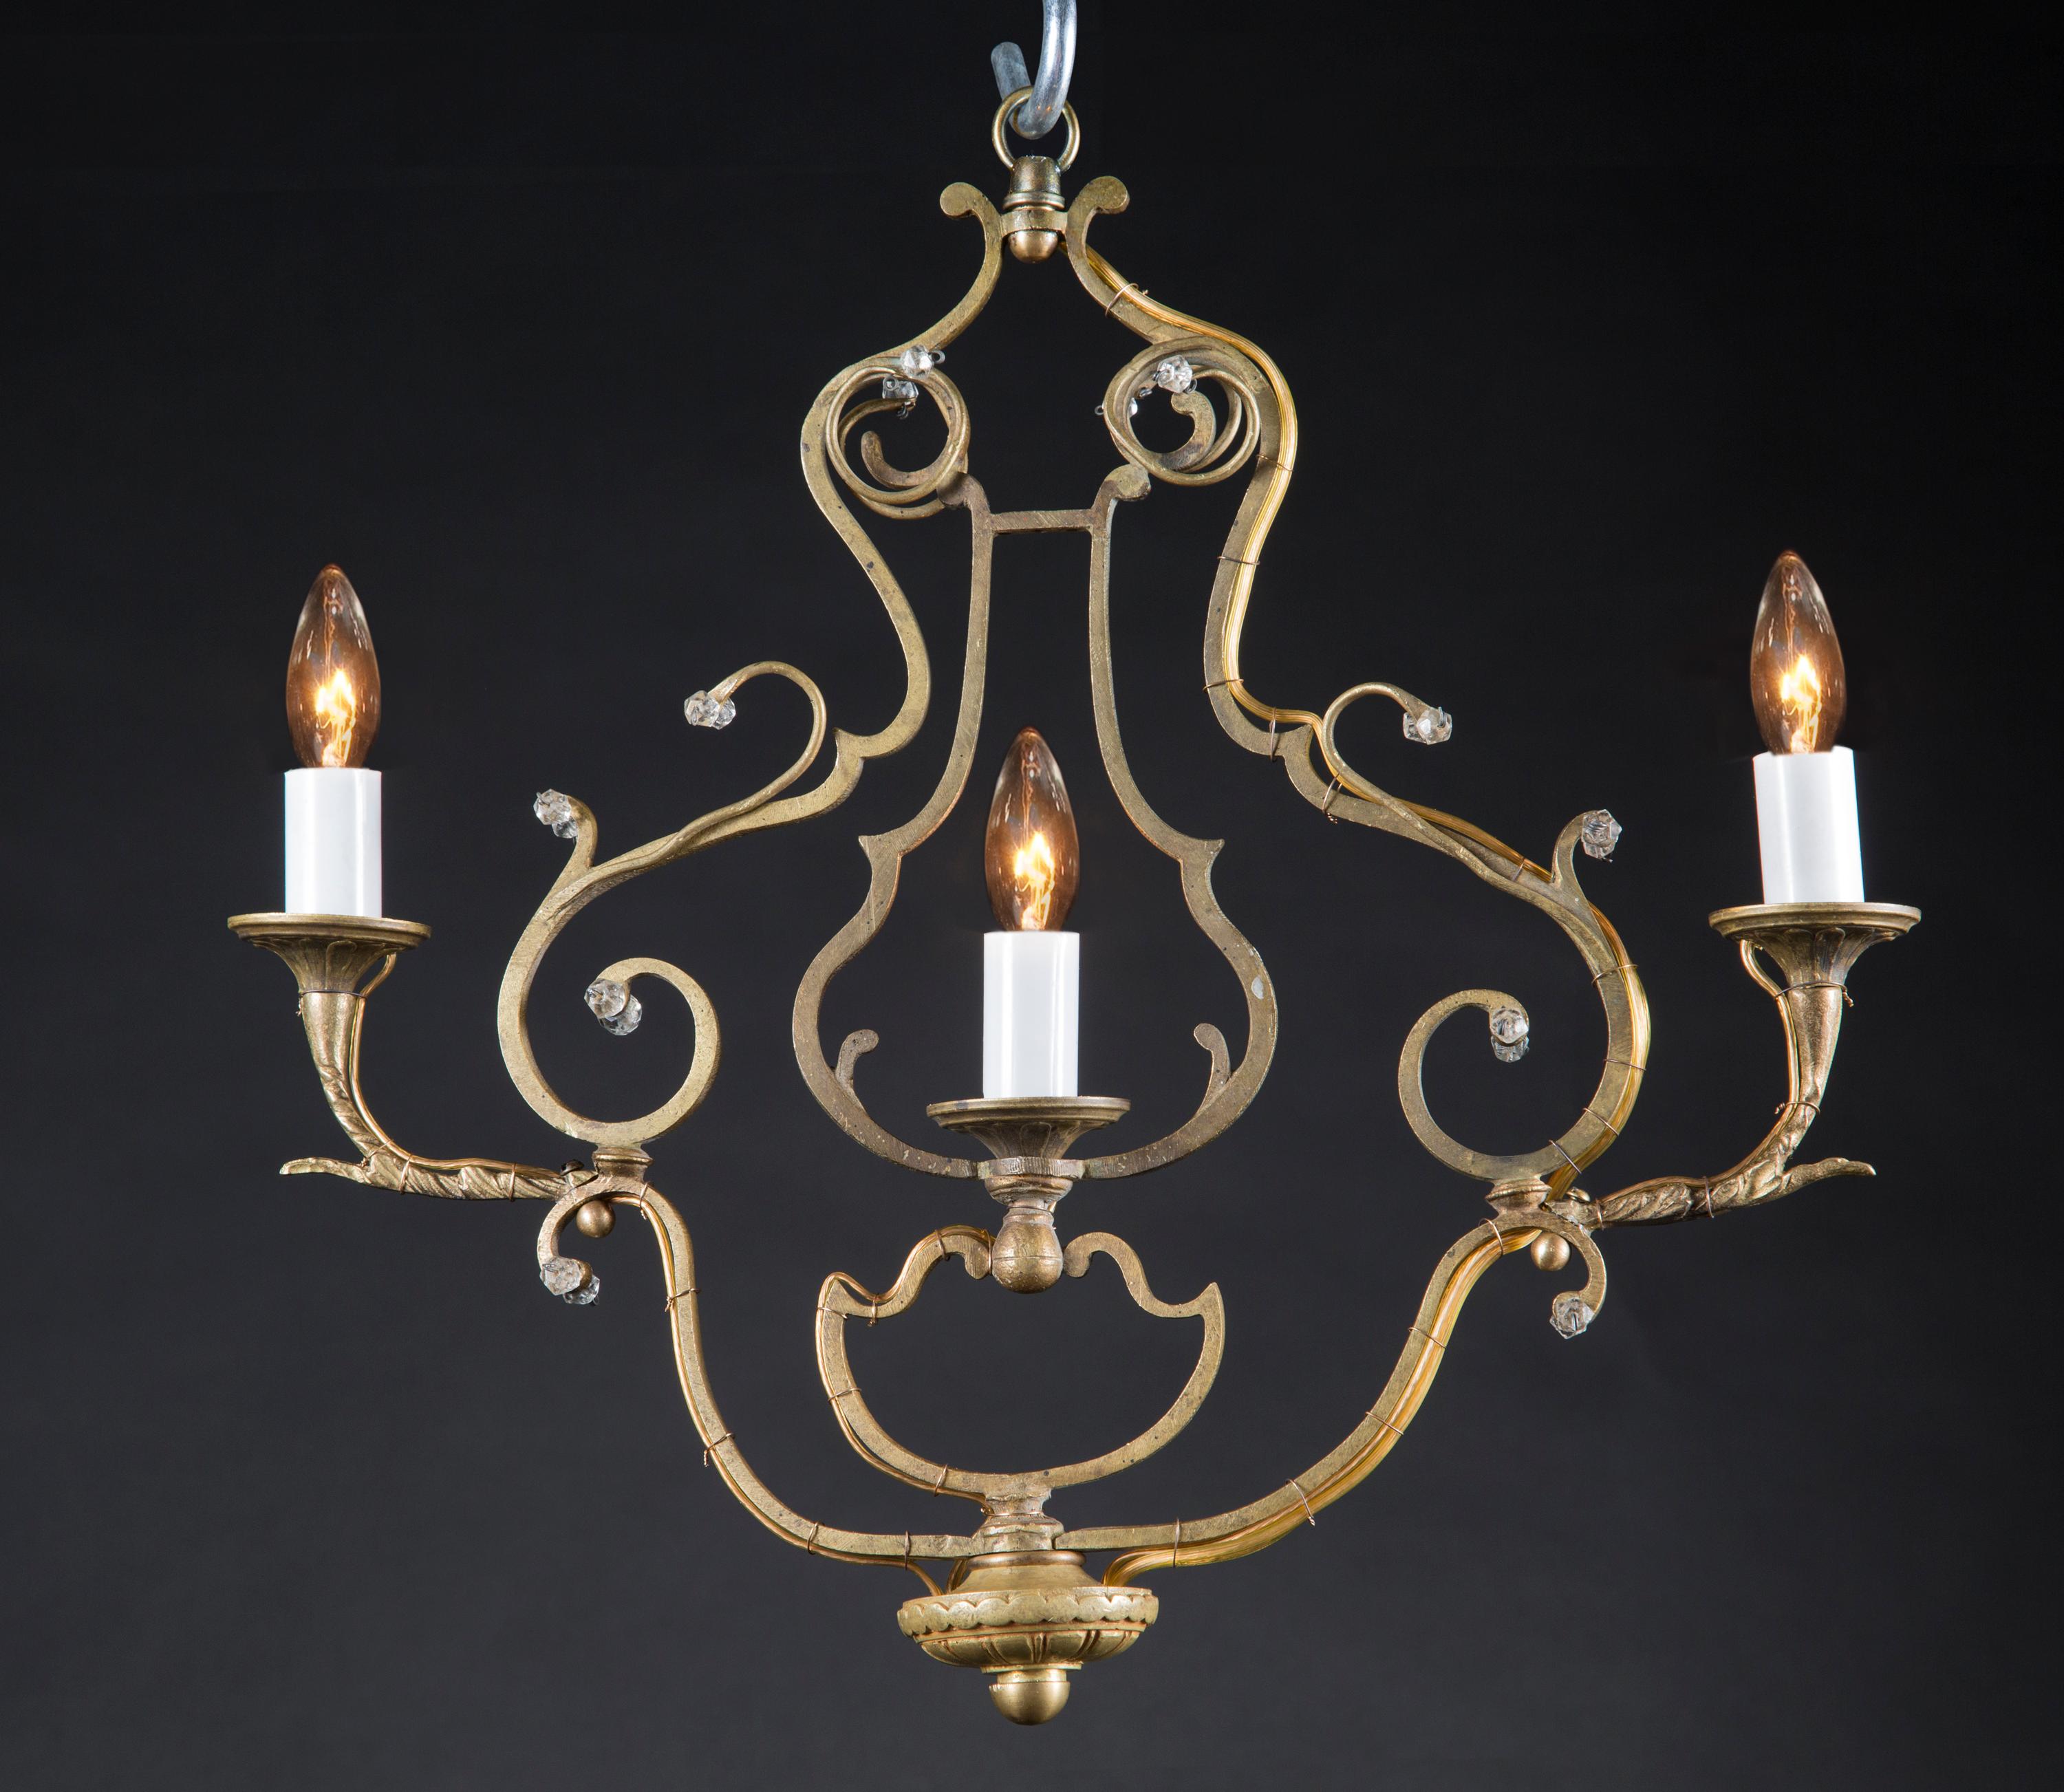 Cette paire inhabituelle de lustres anciens en bronze Louis XV présente un design linéaire parfait pour les couloirs. Les trois lumières sont placées au centre, deux à l'extérieur et une à l'intérieur d'un cadre en forme de lyre. Le cadre de style